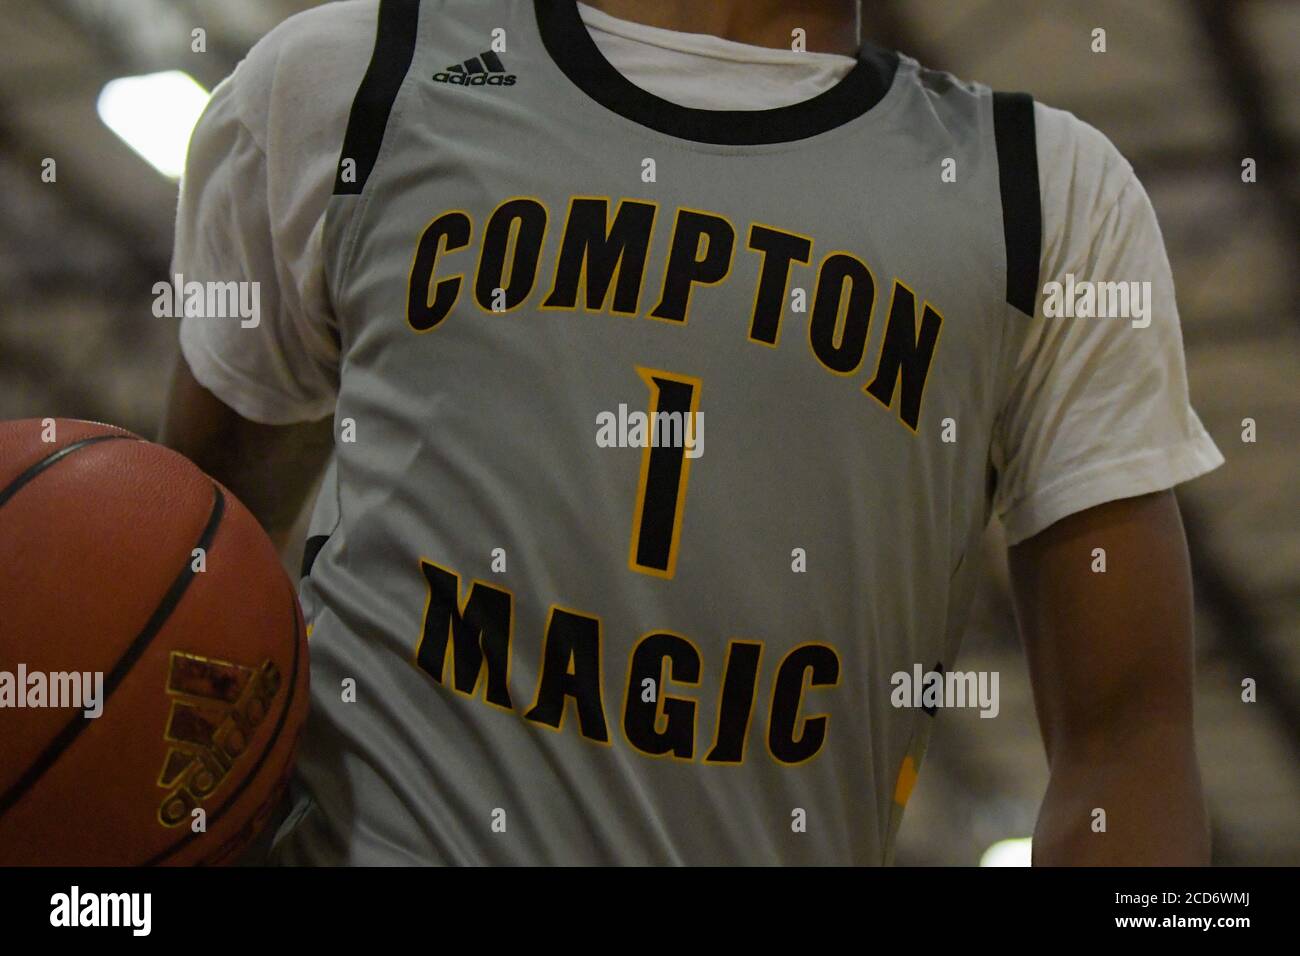 Corona, Estados Unidos. 22 de agosto de 2020. Vista detallada de la camiseta  Adidas llevada por el guarda de puntos Compton Magic Mikey Williams de San  Ysidro durante un torneo Compton Magic